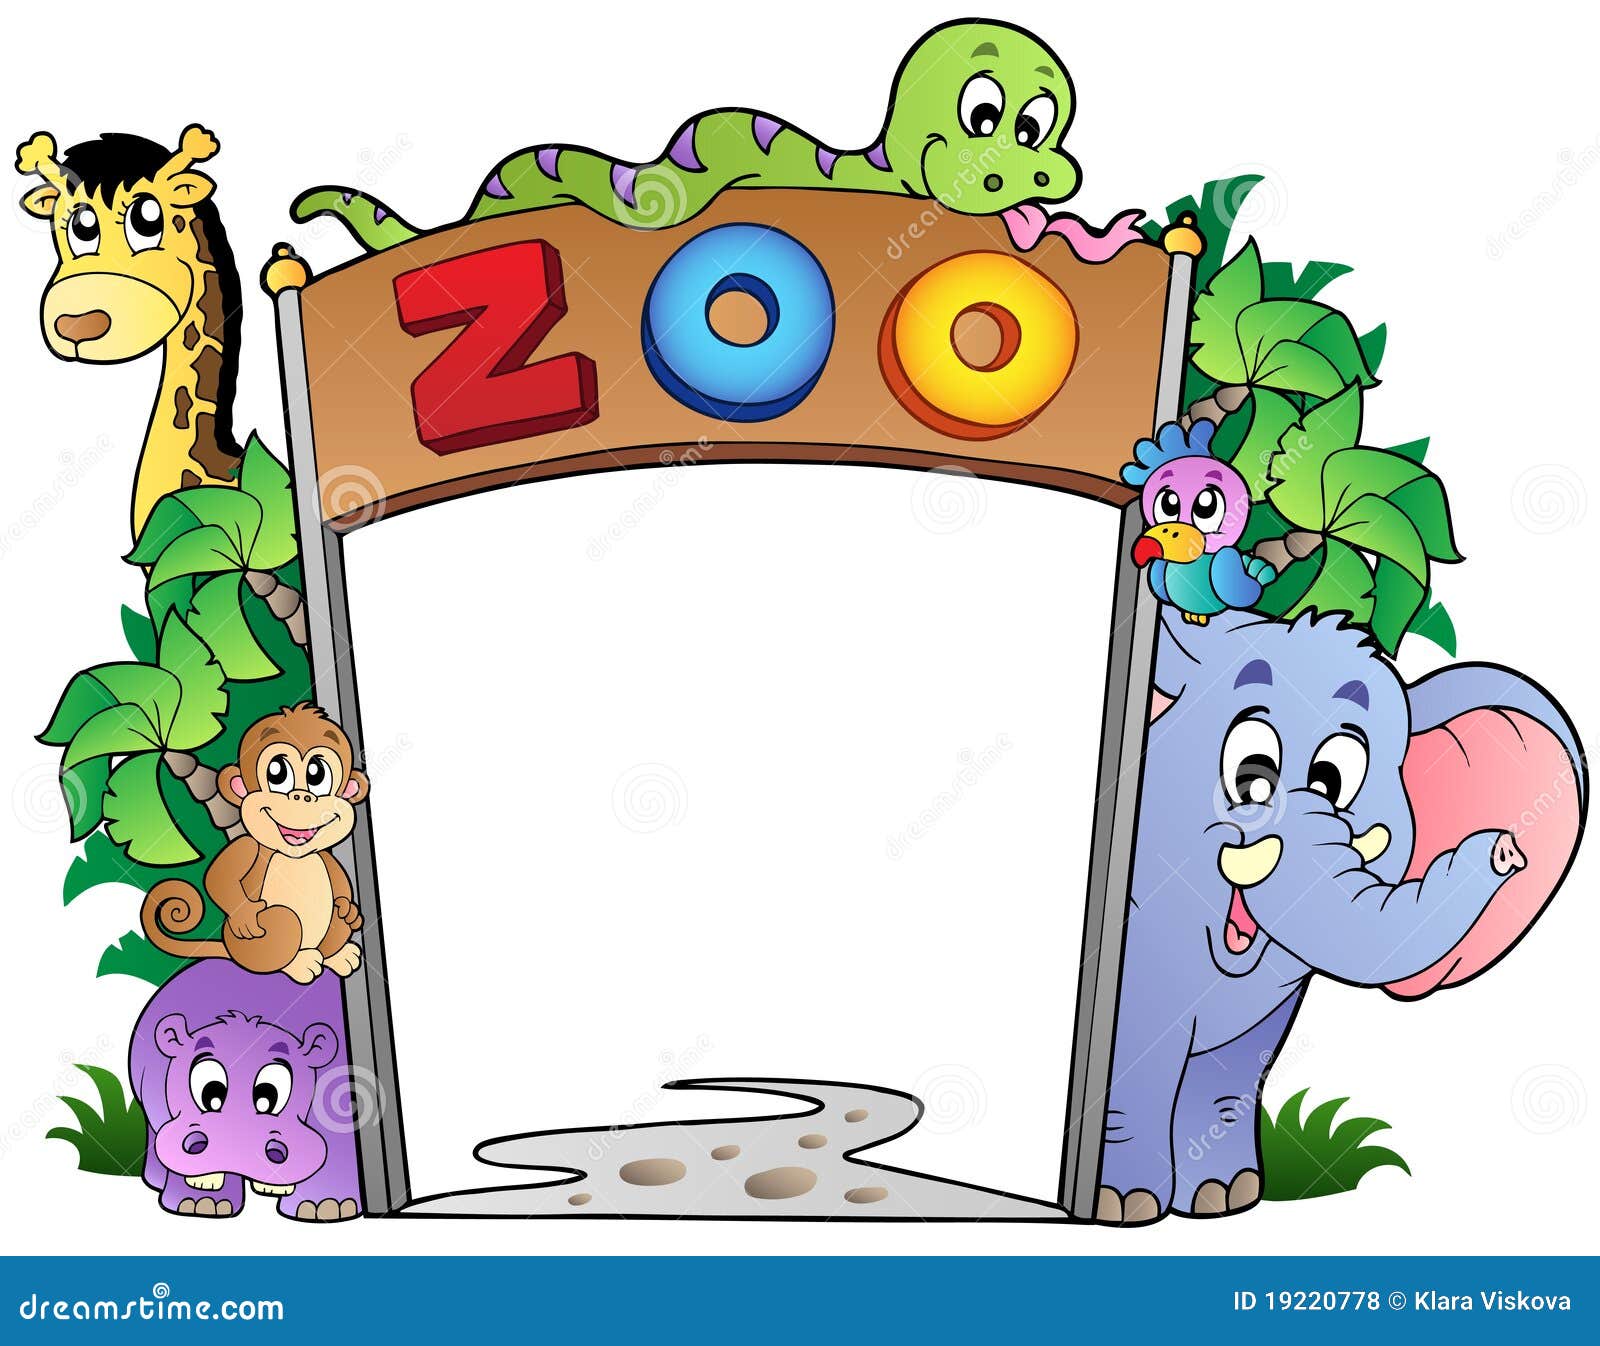 Art of zoo animation